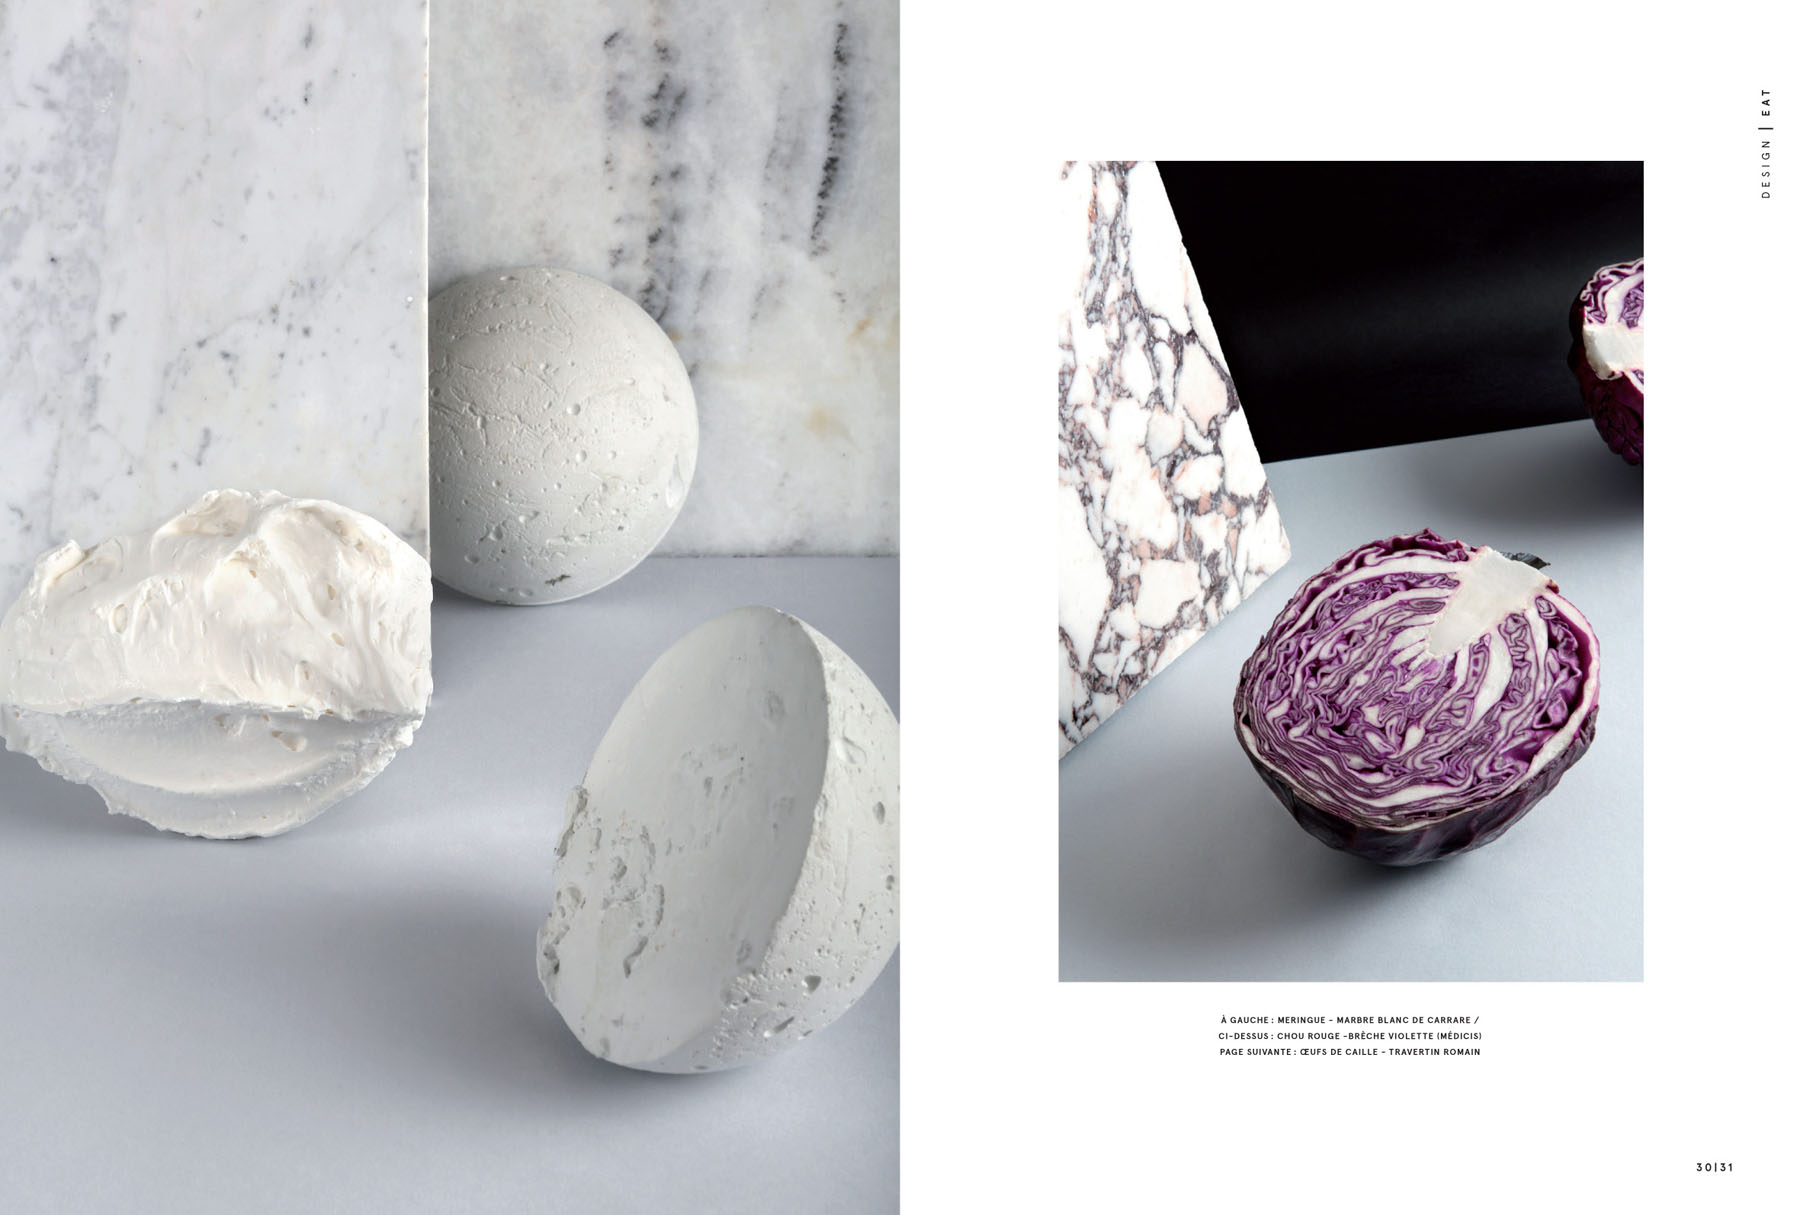 On The Rocks - Mint Magazine / Paris Se Quema & Chloé Gassian (11)